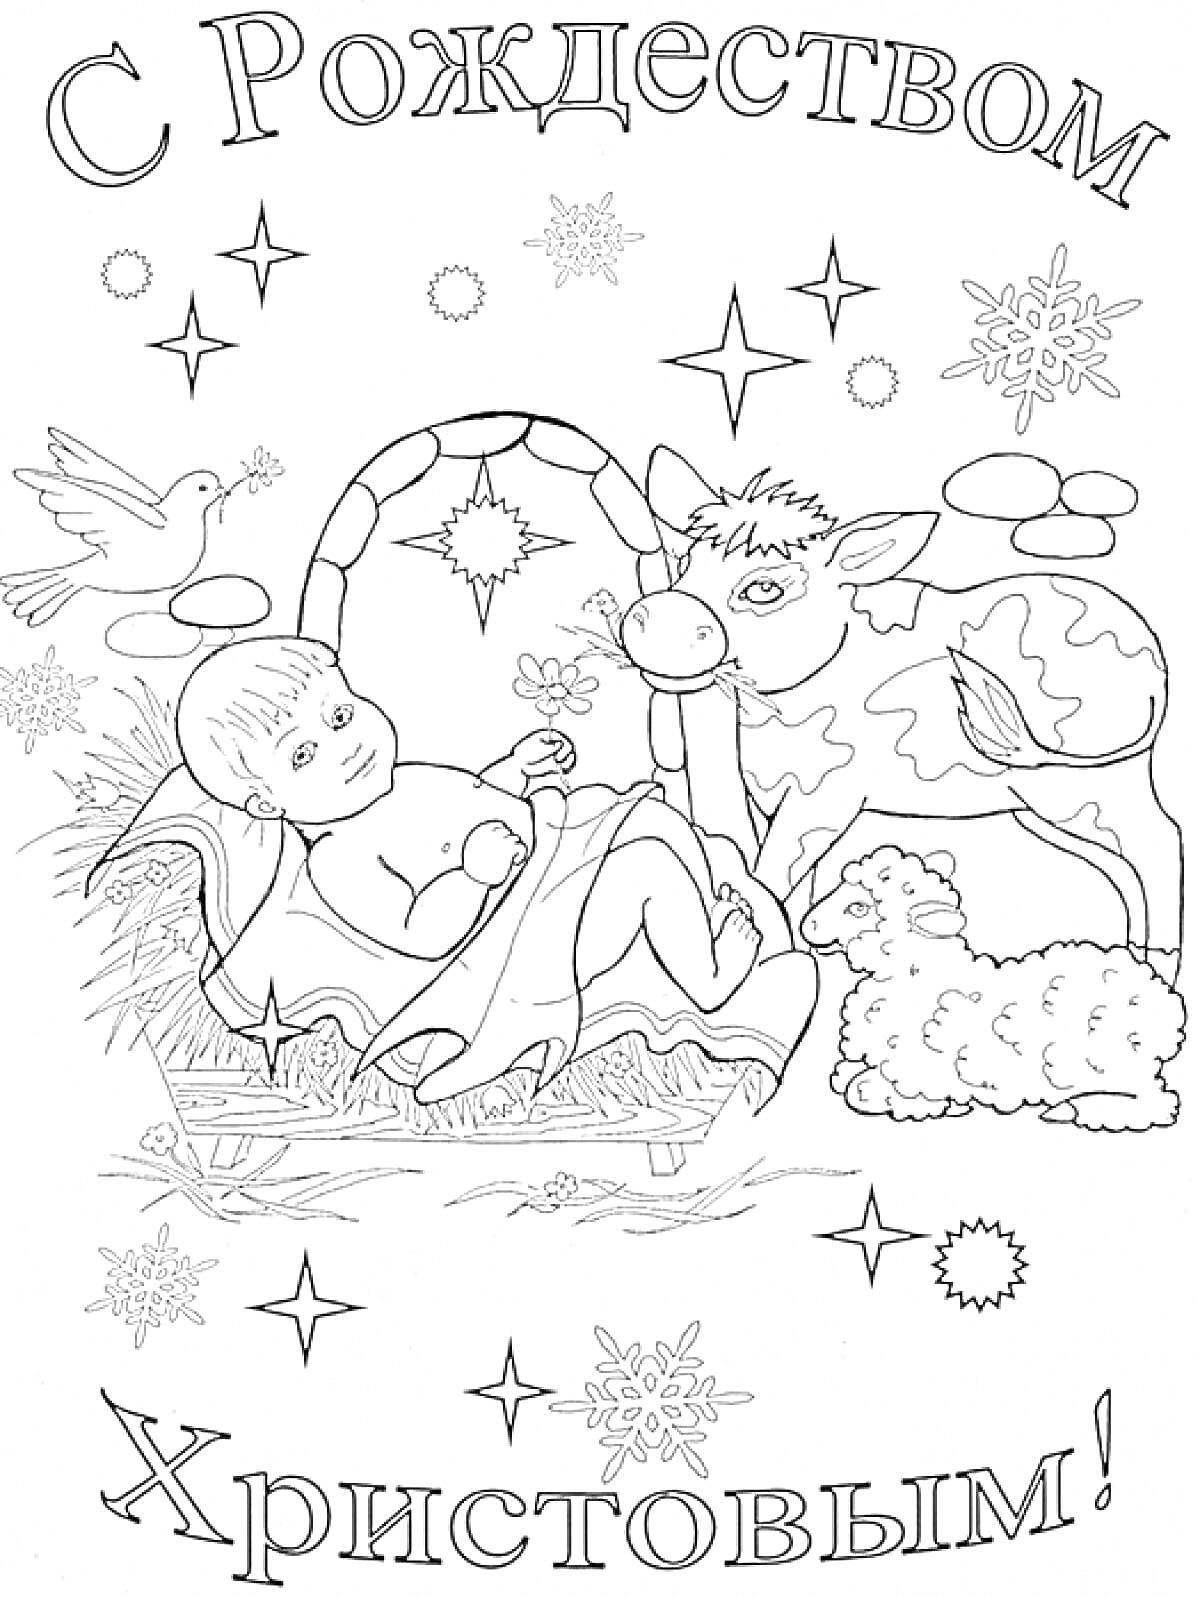 Рождественская сцена с младенцем Иисусом в яслях, ослом, овцой, звездочками, снежинками и голубем